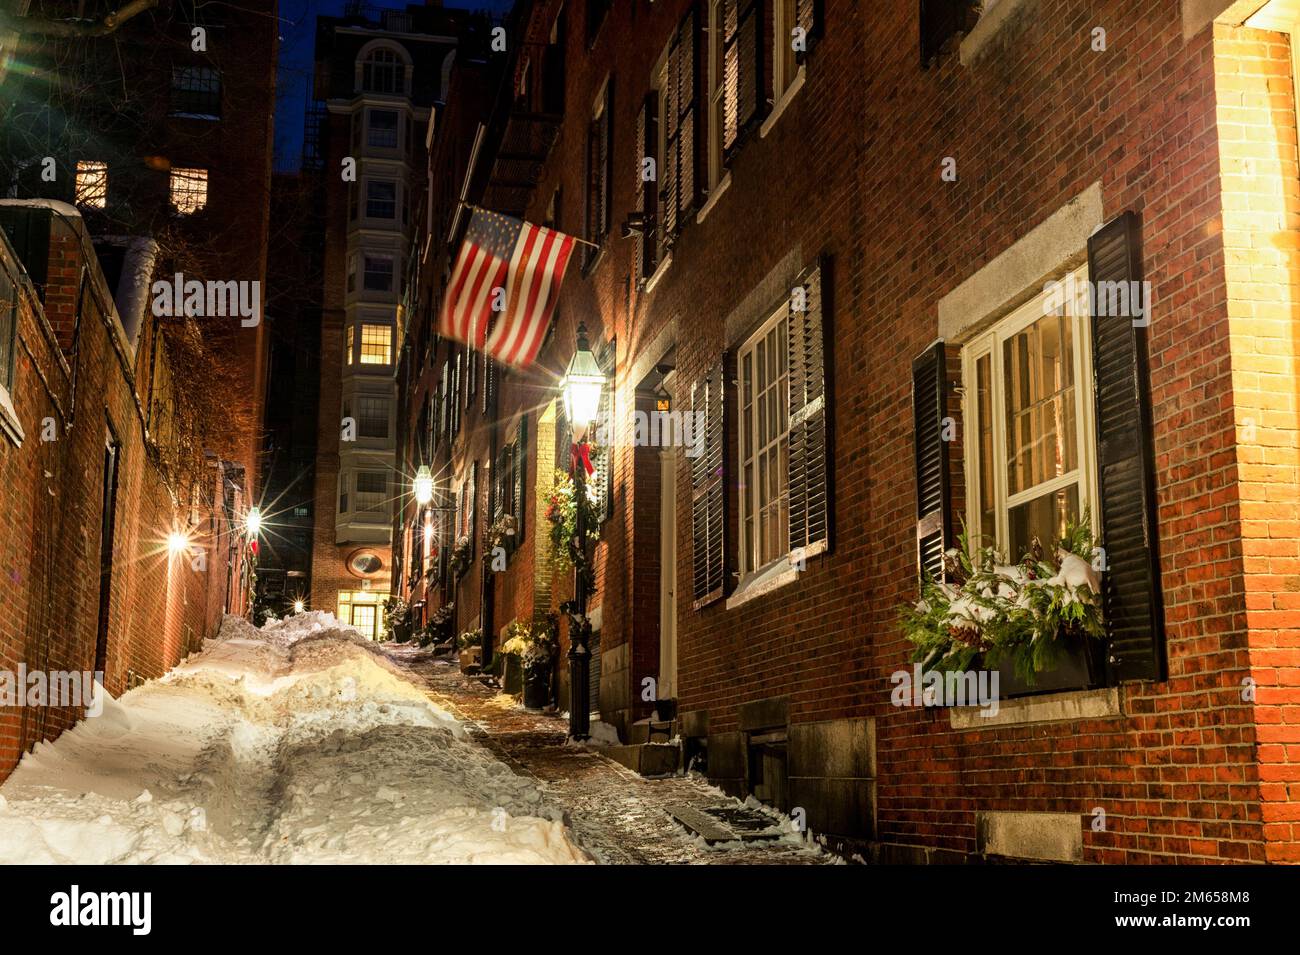 Beacon Hill Street in Boston. Long Exposure Night Photography. Acorn Street, Boston. Massachusetts, USA Stock Photo